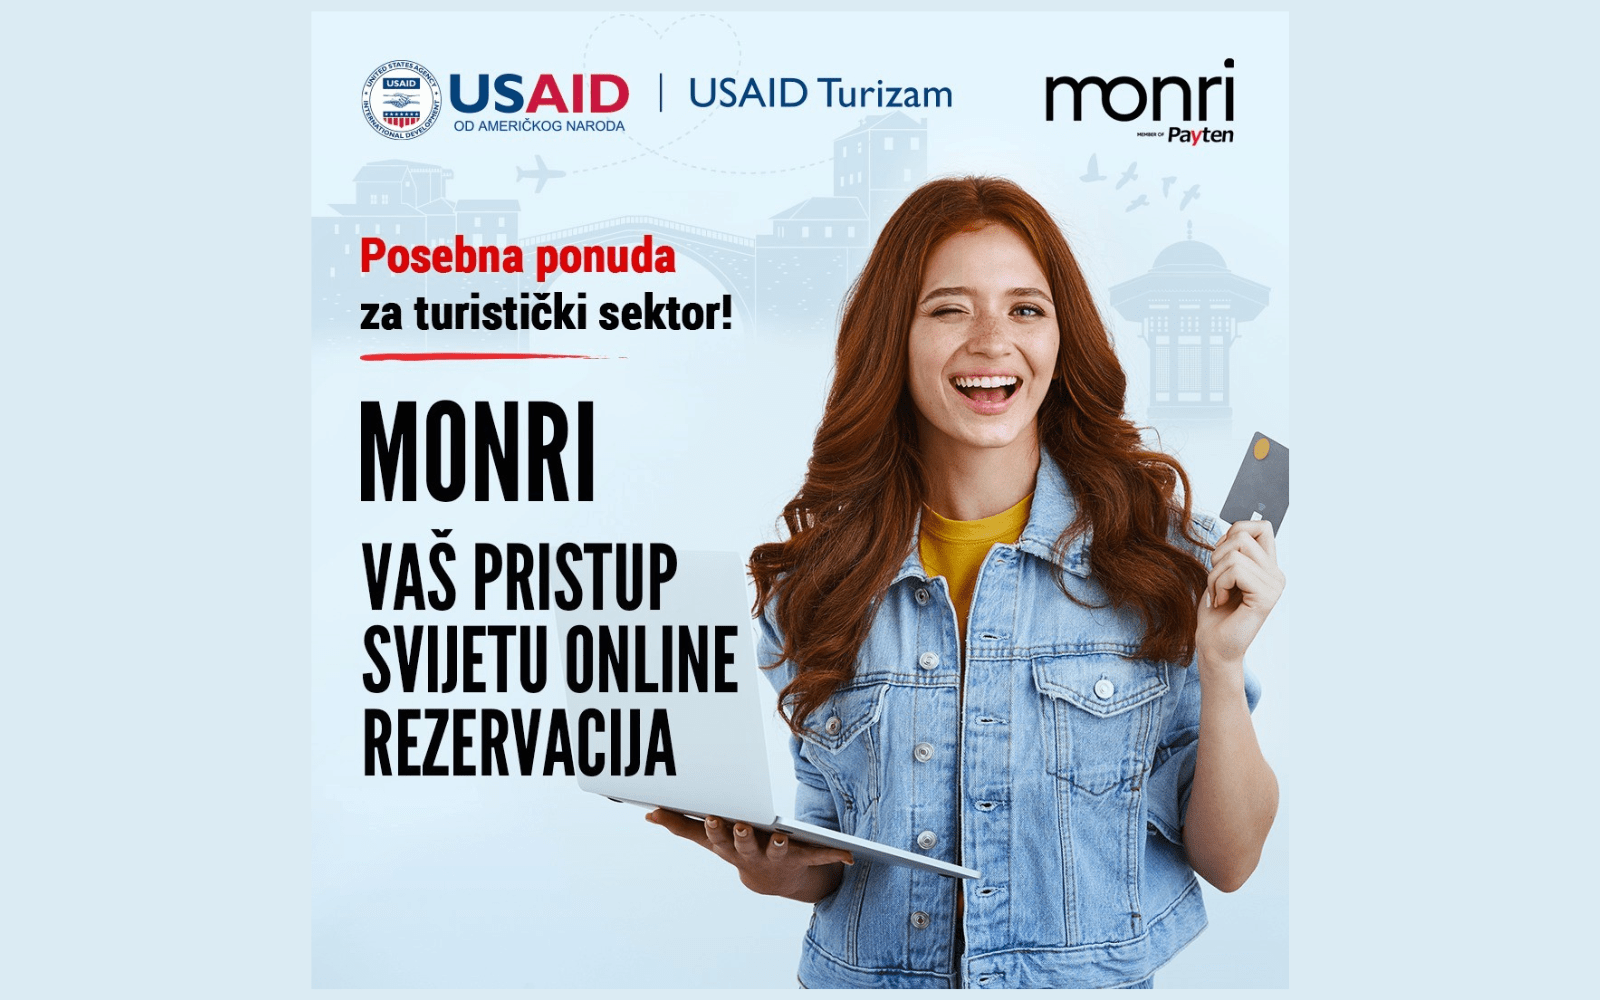 monri-payment-solutions_usaid-turizam_bih_bosna-i-hercegovina_saradnja_online-rezervacije_online-placanje